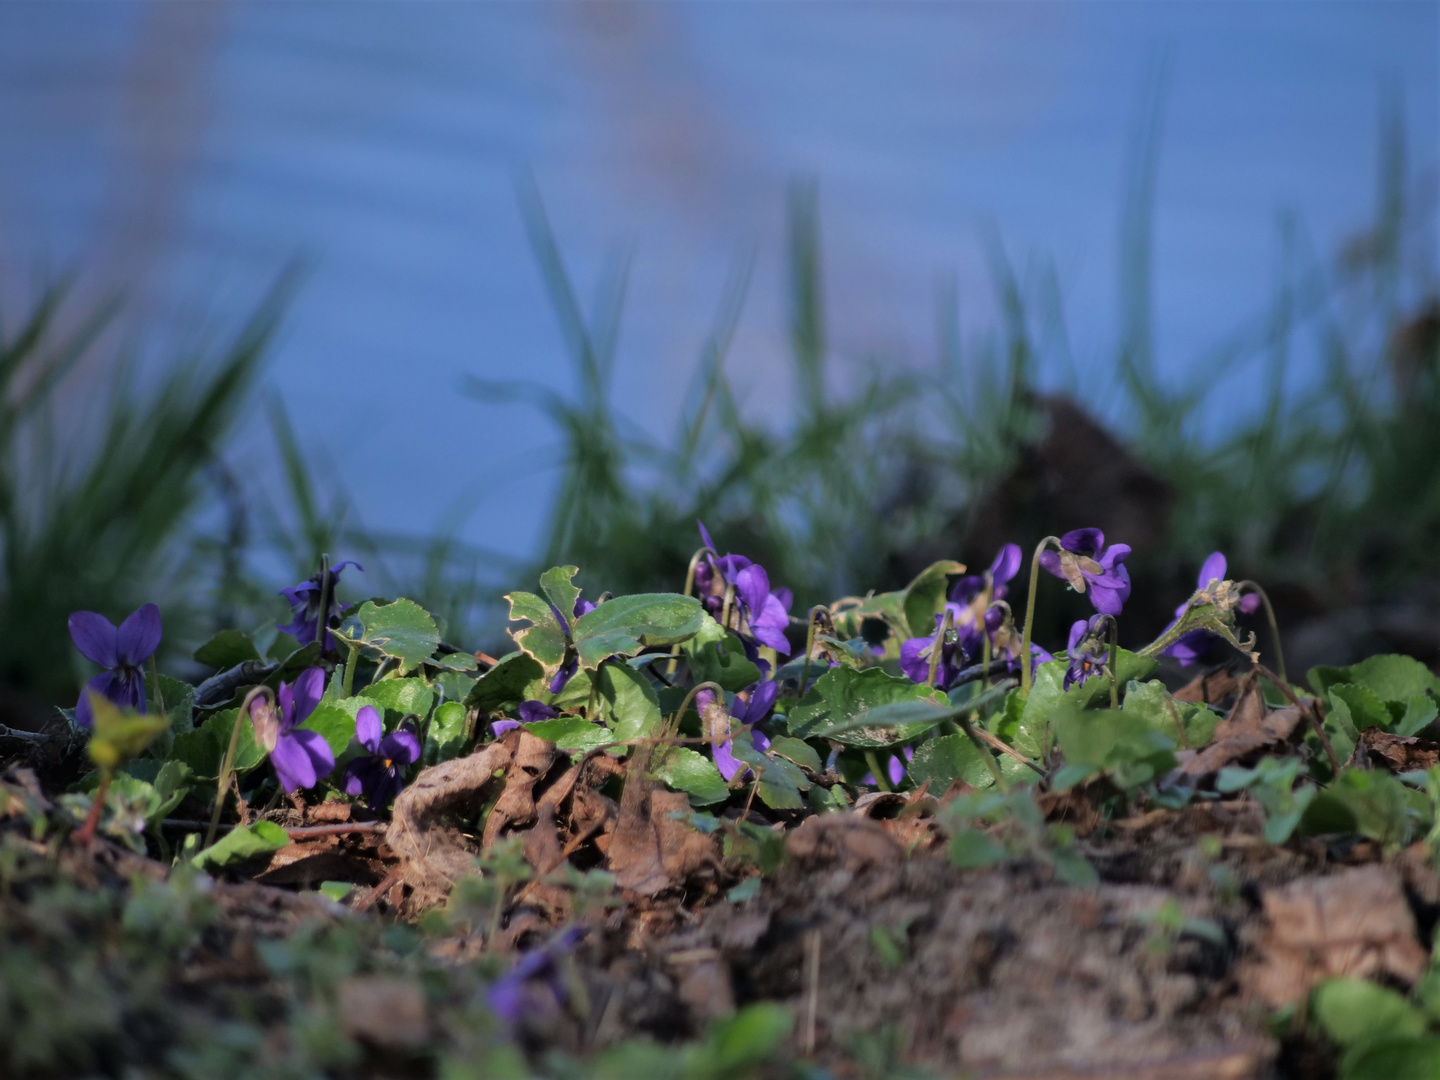 Blüte von wilden Veilchen (Viola adunca)